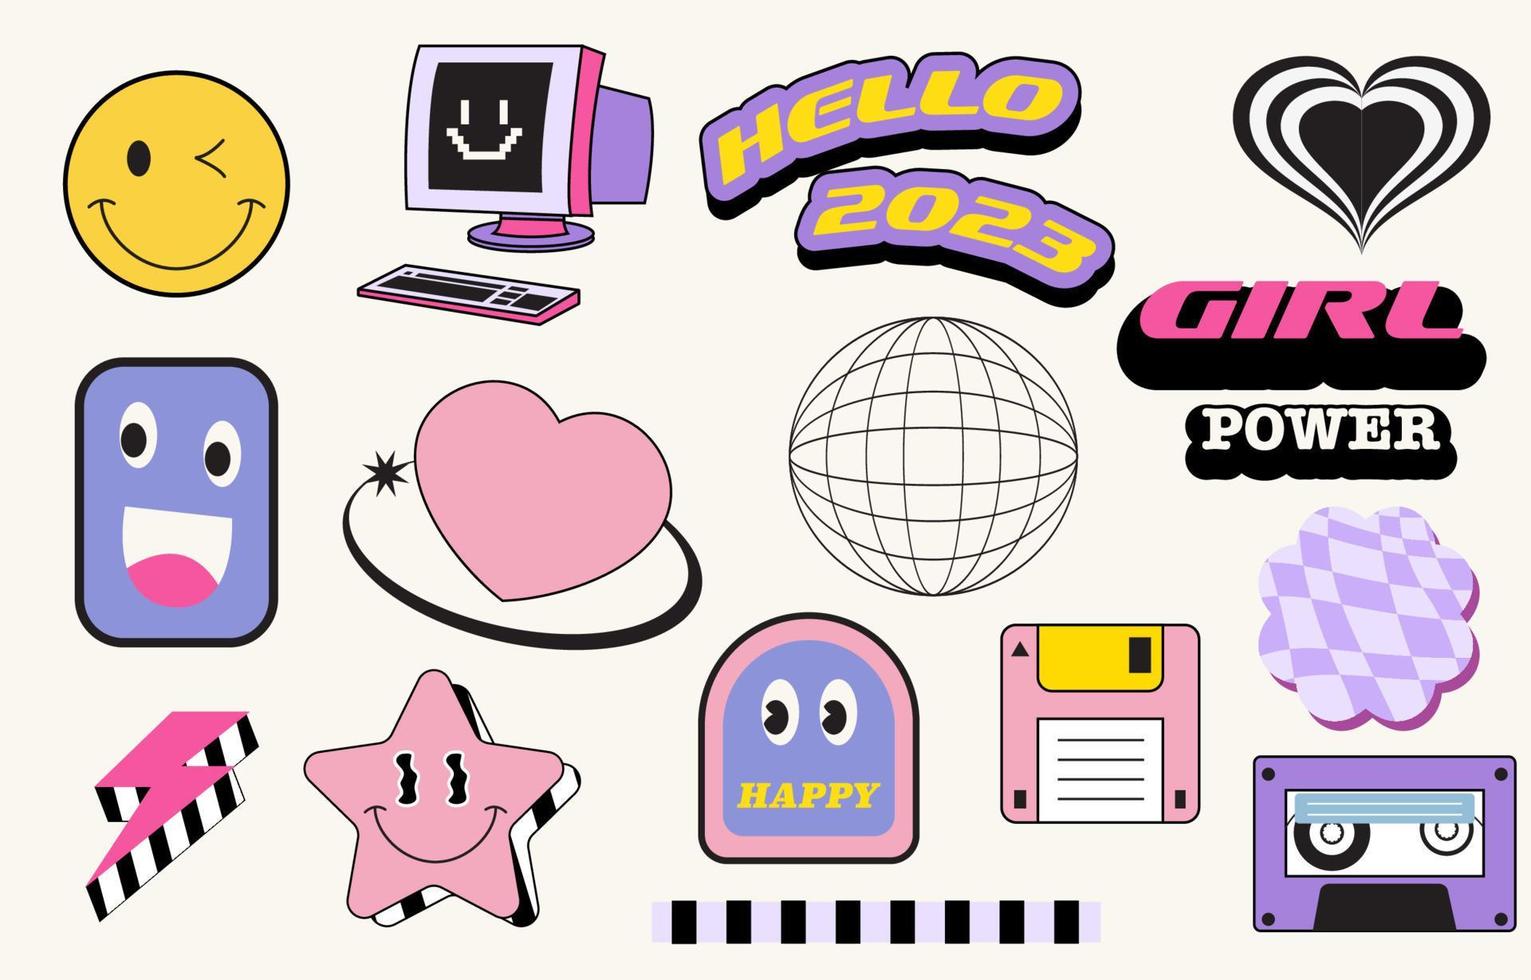 90s voorwerp ontwerp in knal en y2k stijl met emoji, ster, band vector